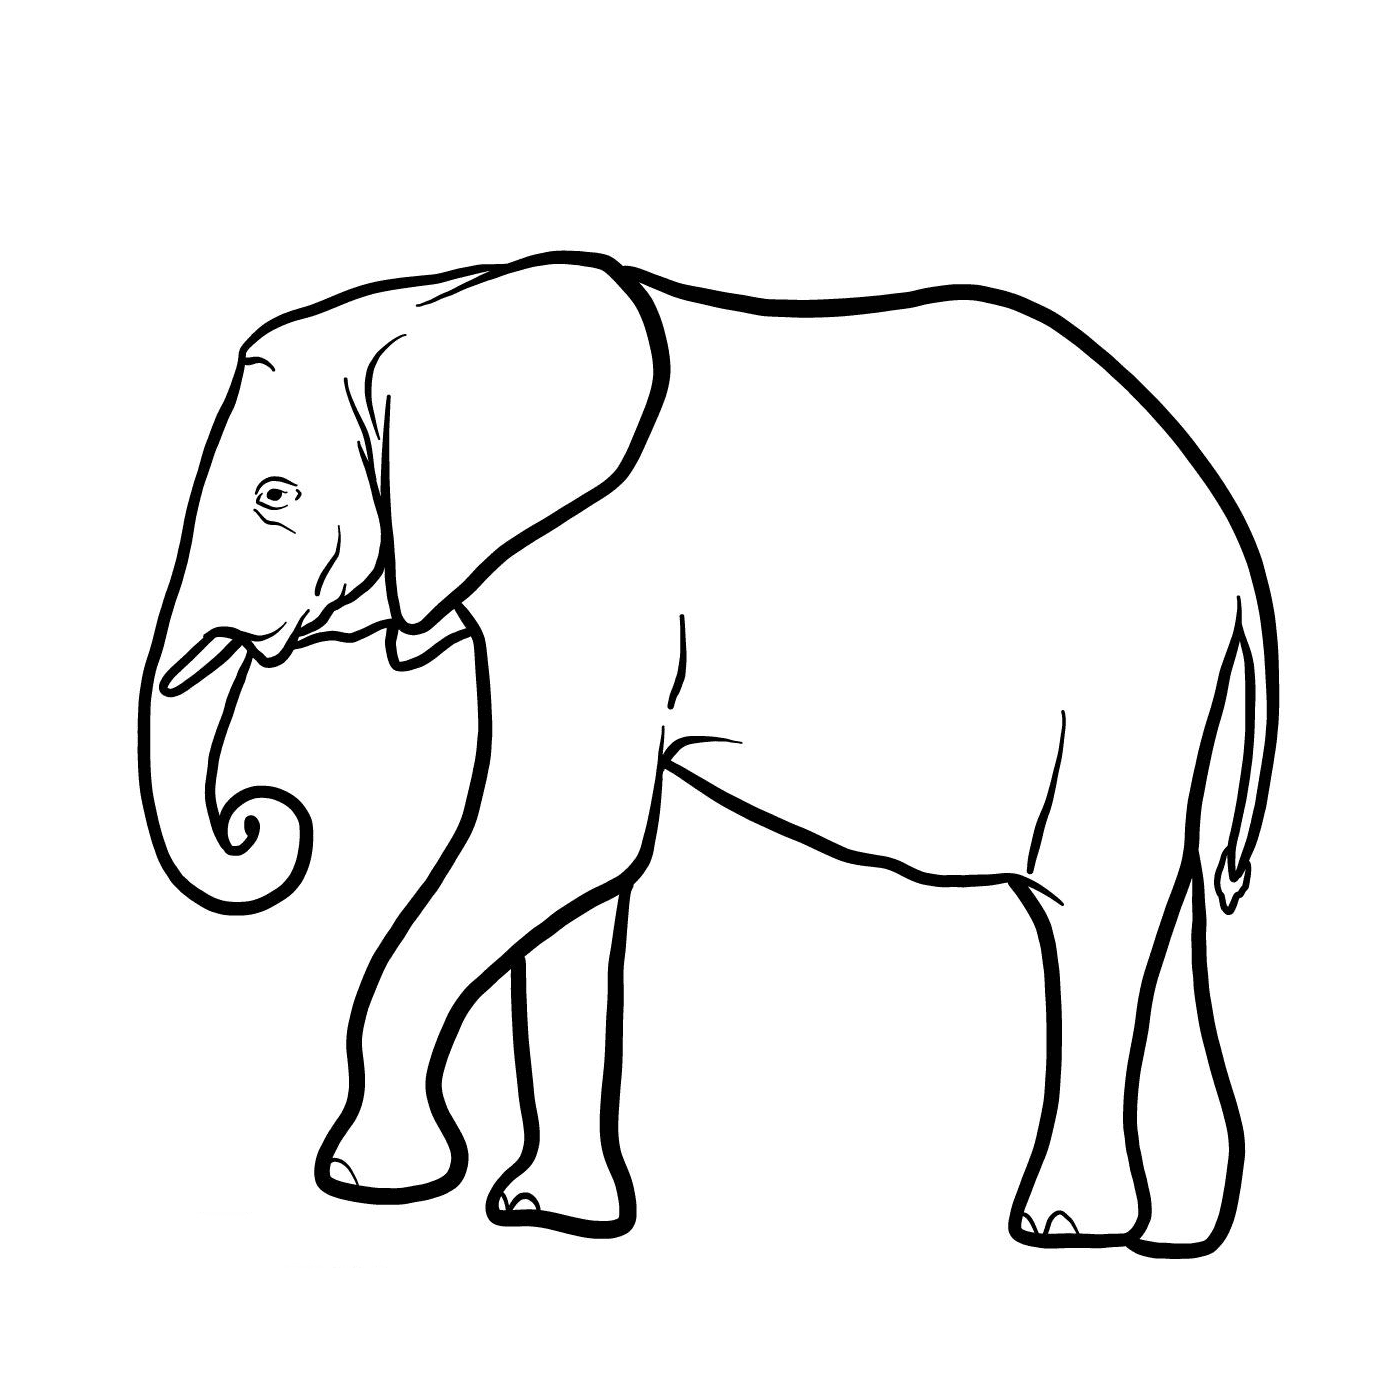  Un elefante con un tronco largo 